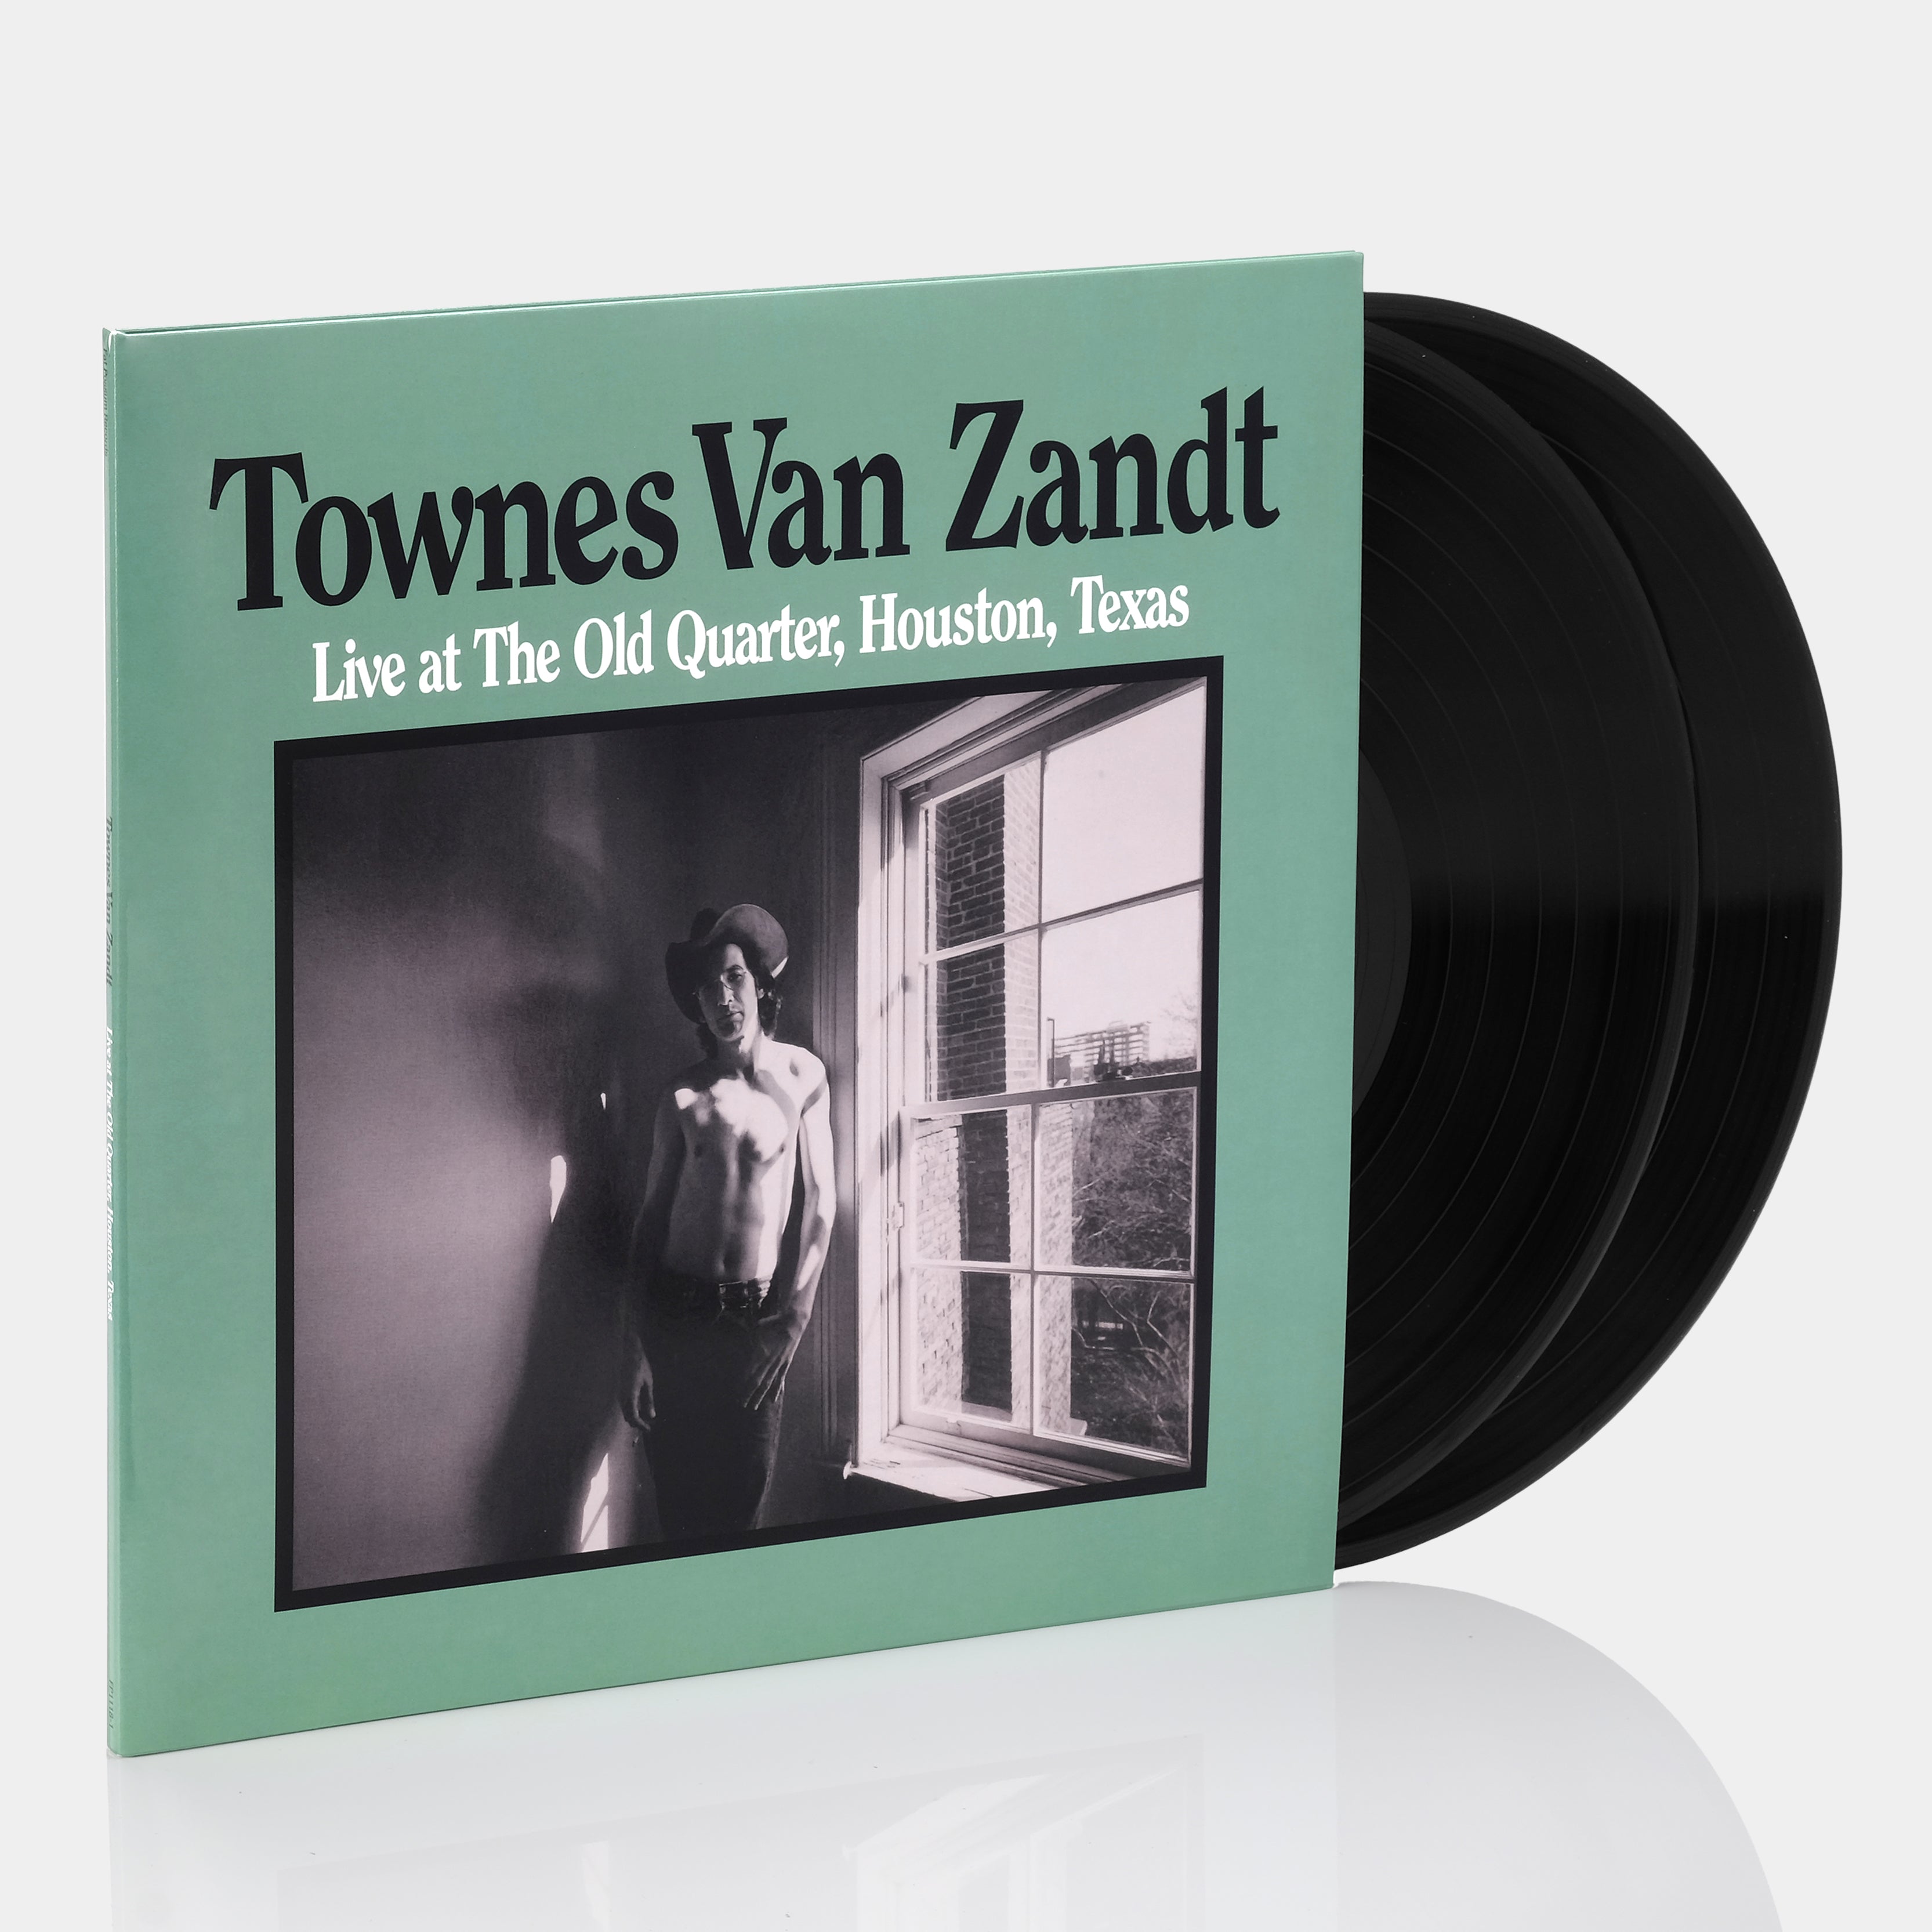 Townes Van Zandt - Live At The Old Quarter, Houston, Texas 2xLP Vinyl Record